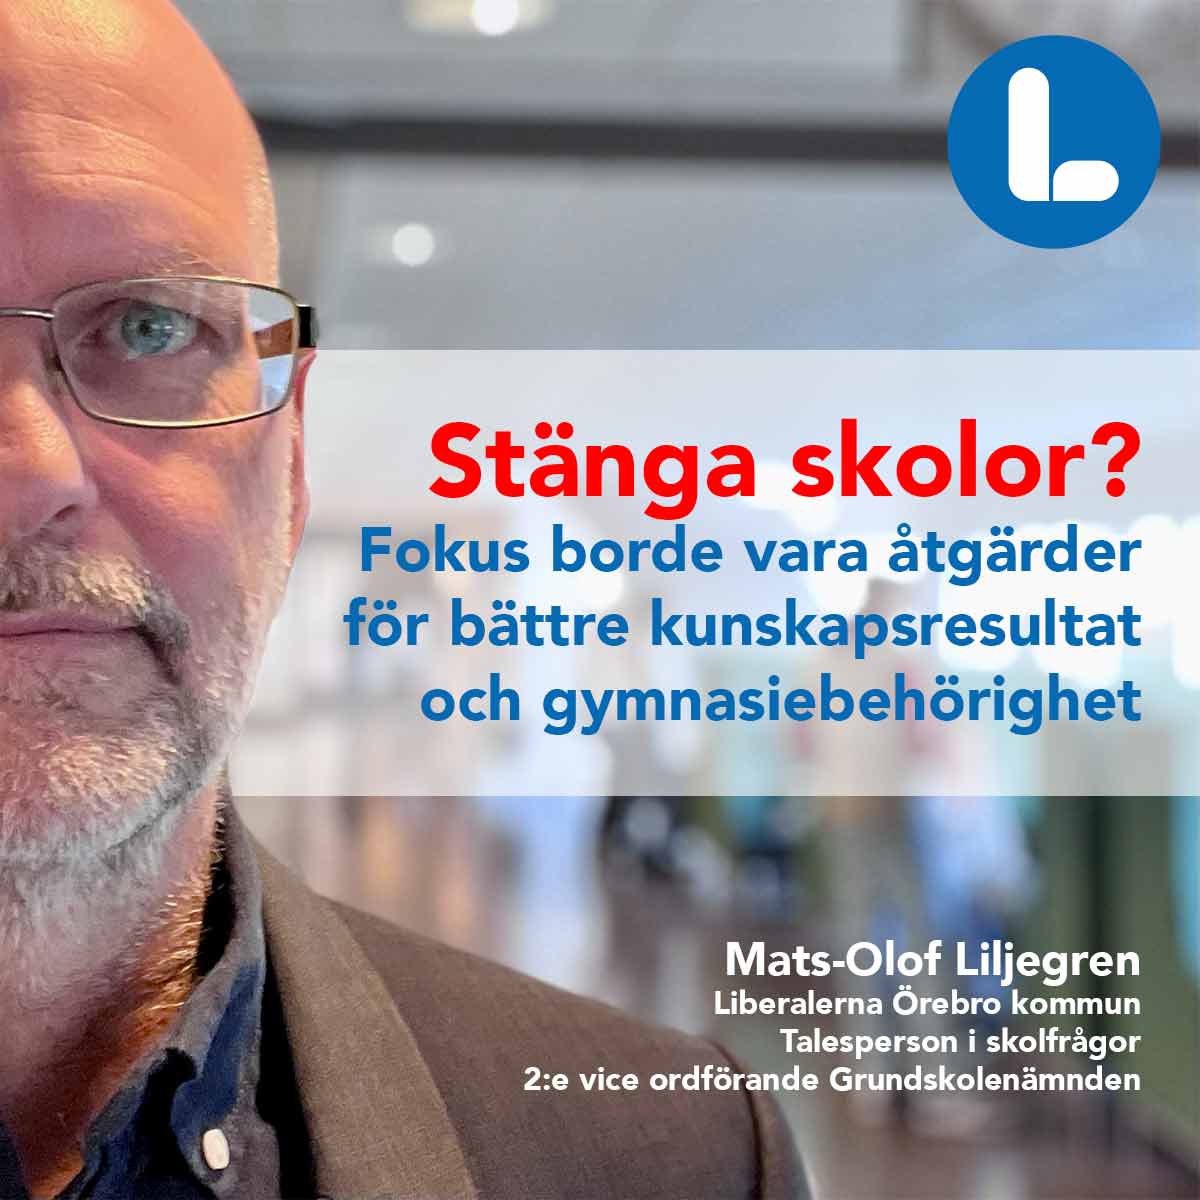 Mats-Olof Liljegren, Liberalerna Örebro kommun Talesperson i skolfrågor 2:e vice ordförande Grundskolenämnden